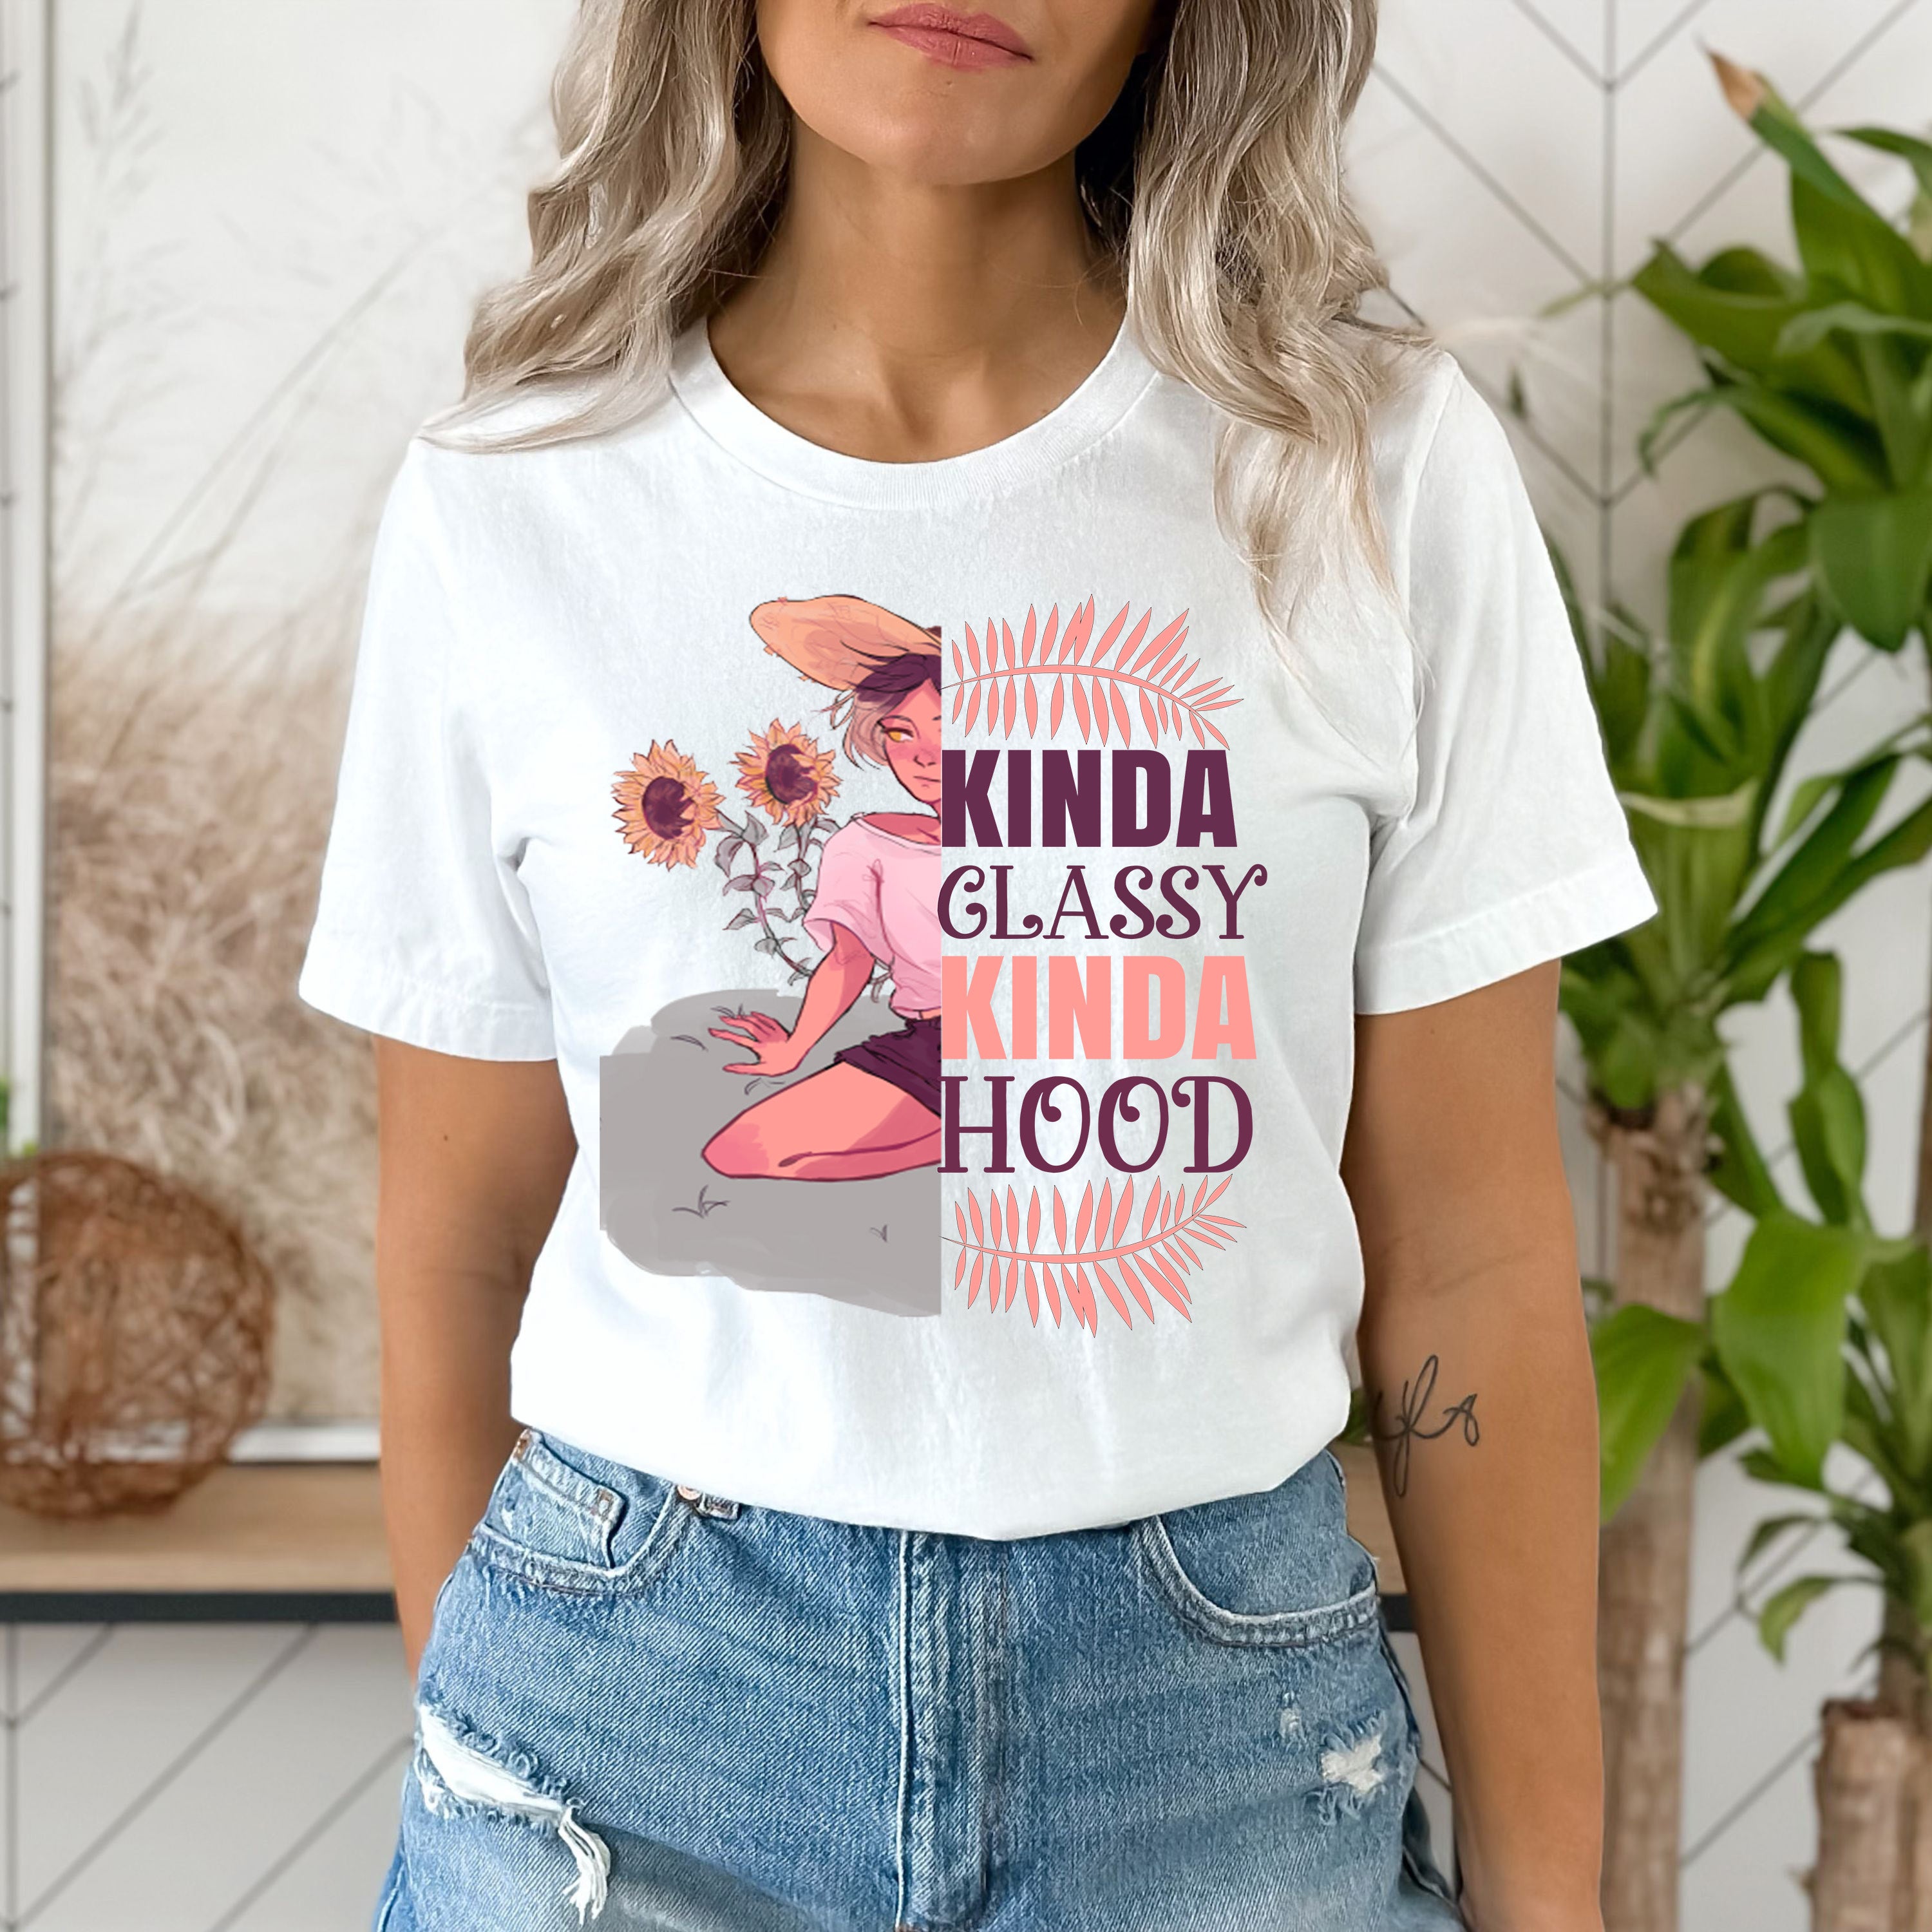 "KINDA CLASSY KINDA HOOD" -SHIRT